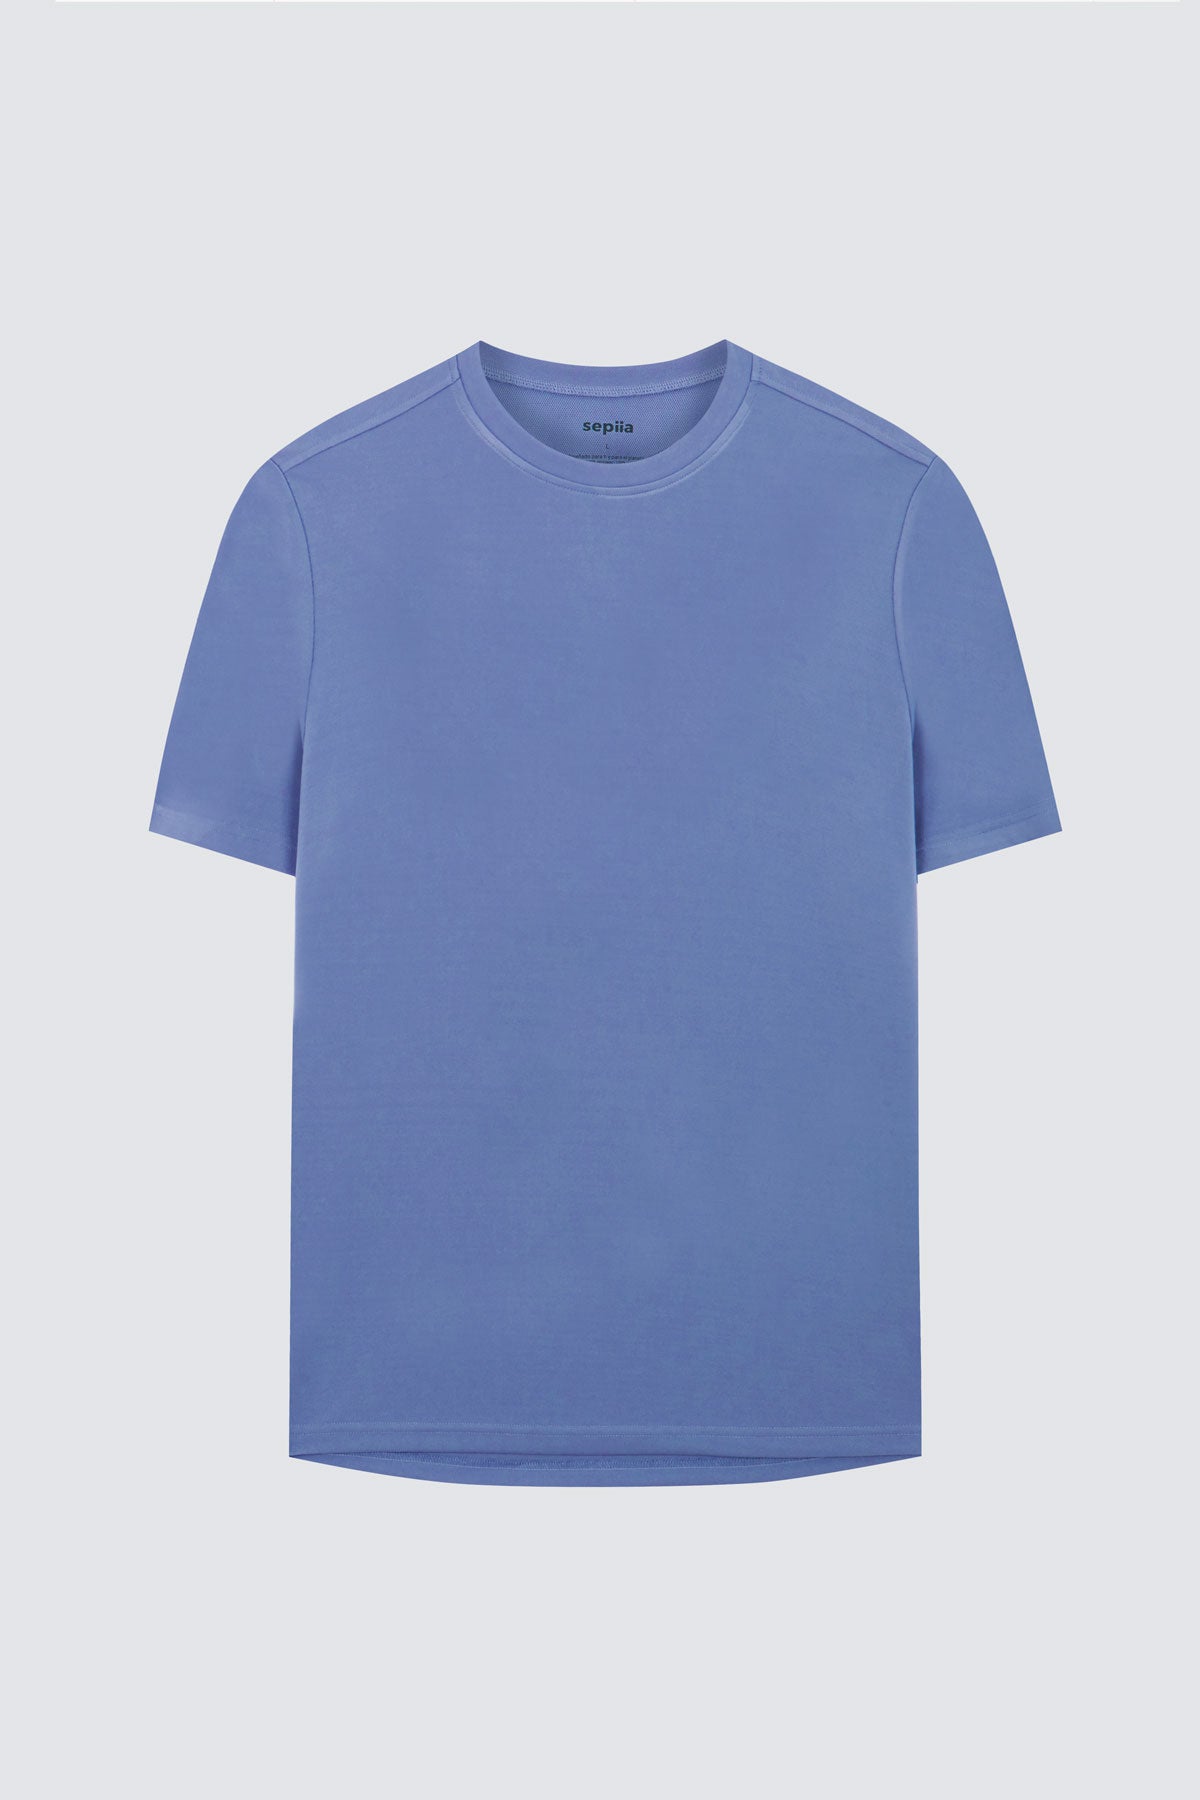 Camiseta de hombre en lavanda de Sepiia, suave y cómoda, perfecta para cualquier ocasión. Foto prenda en plano